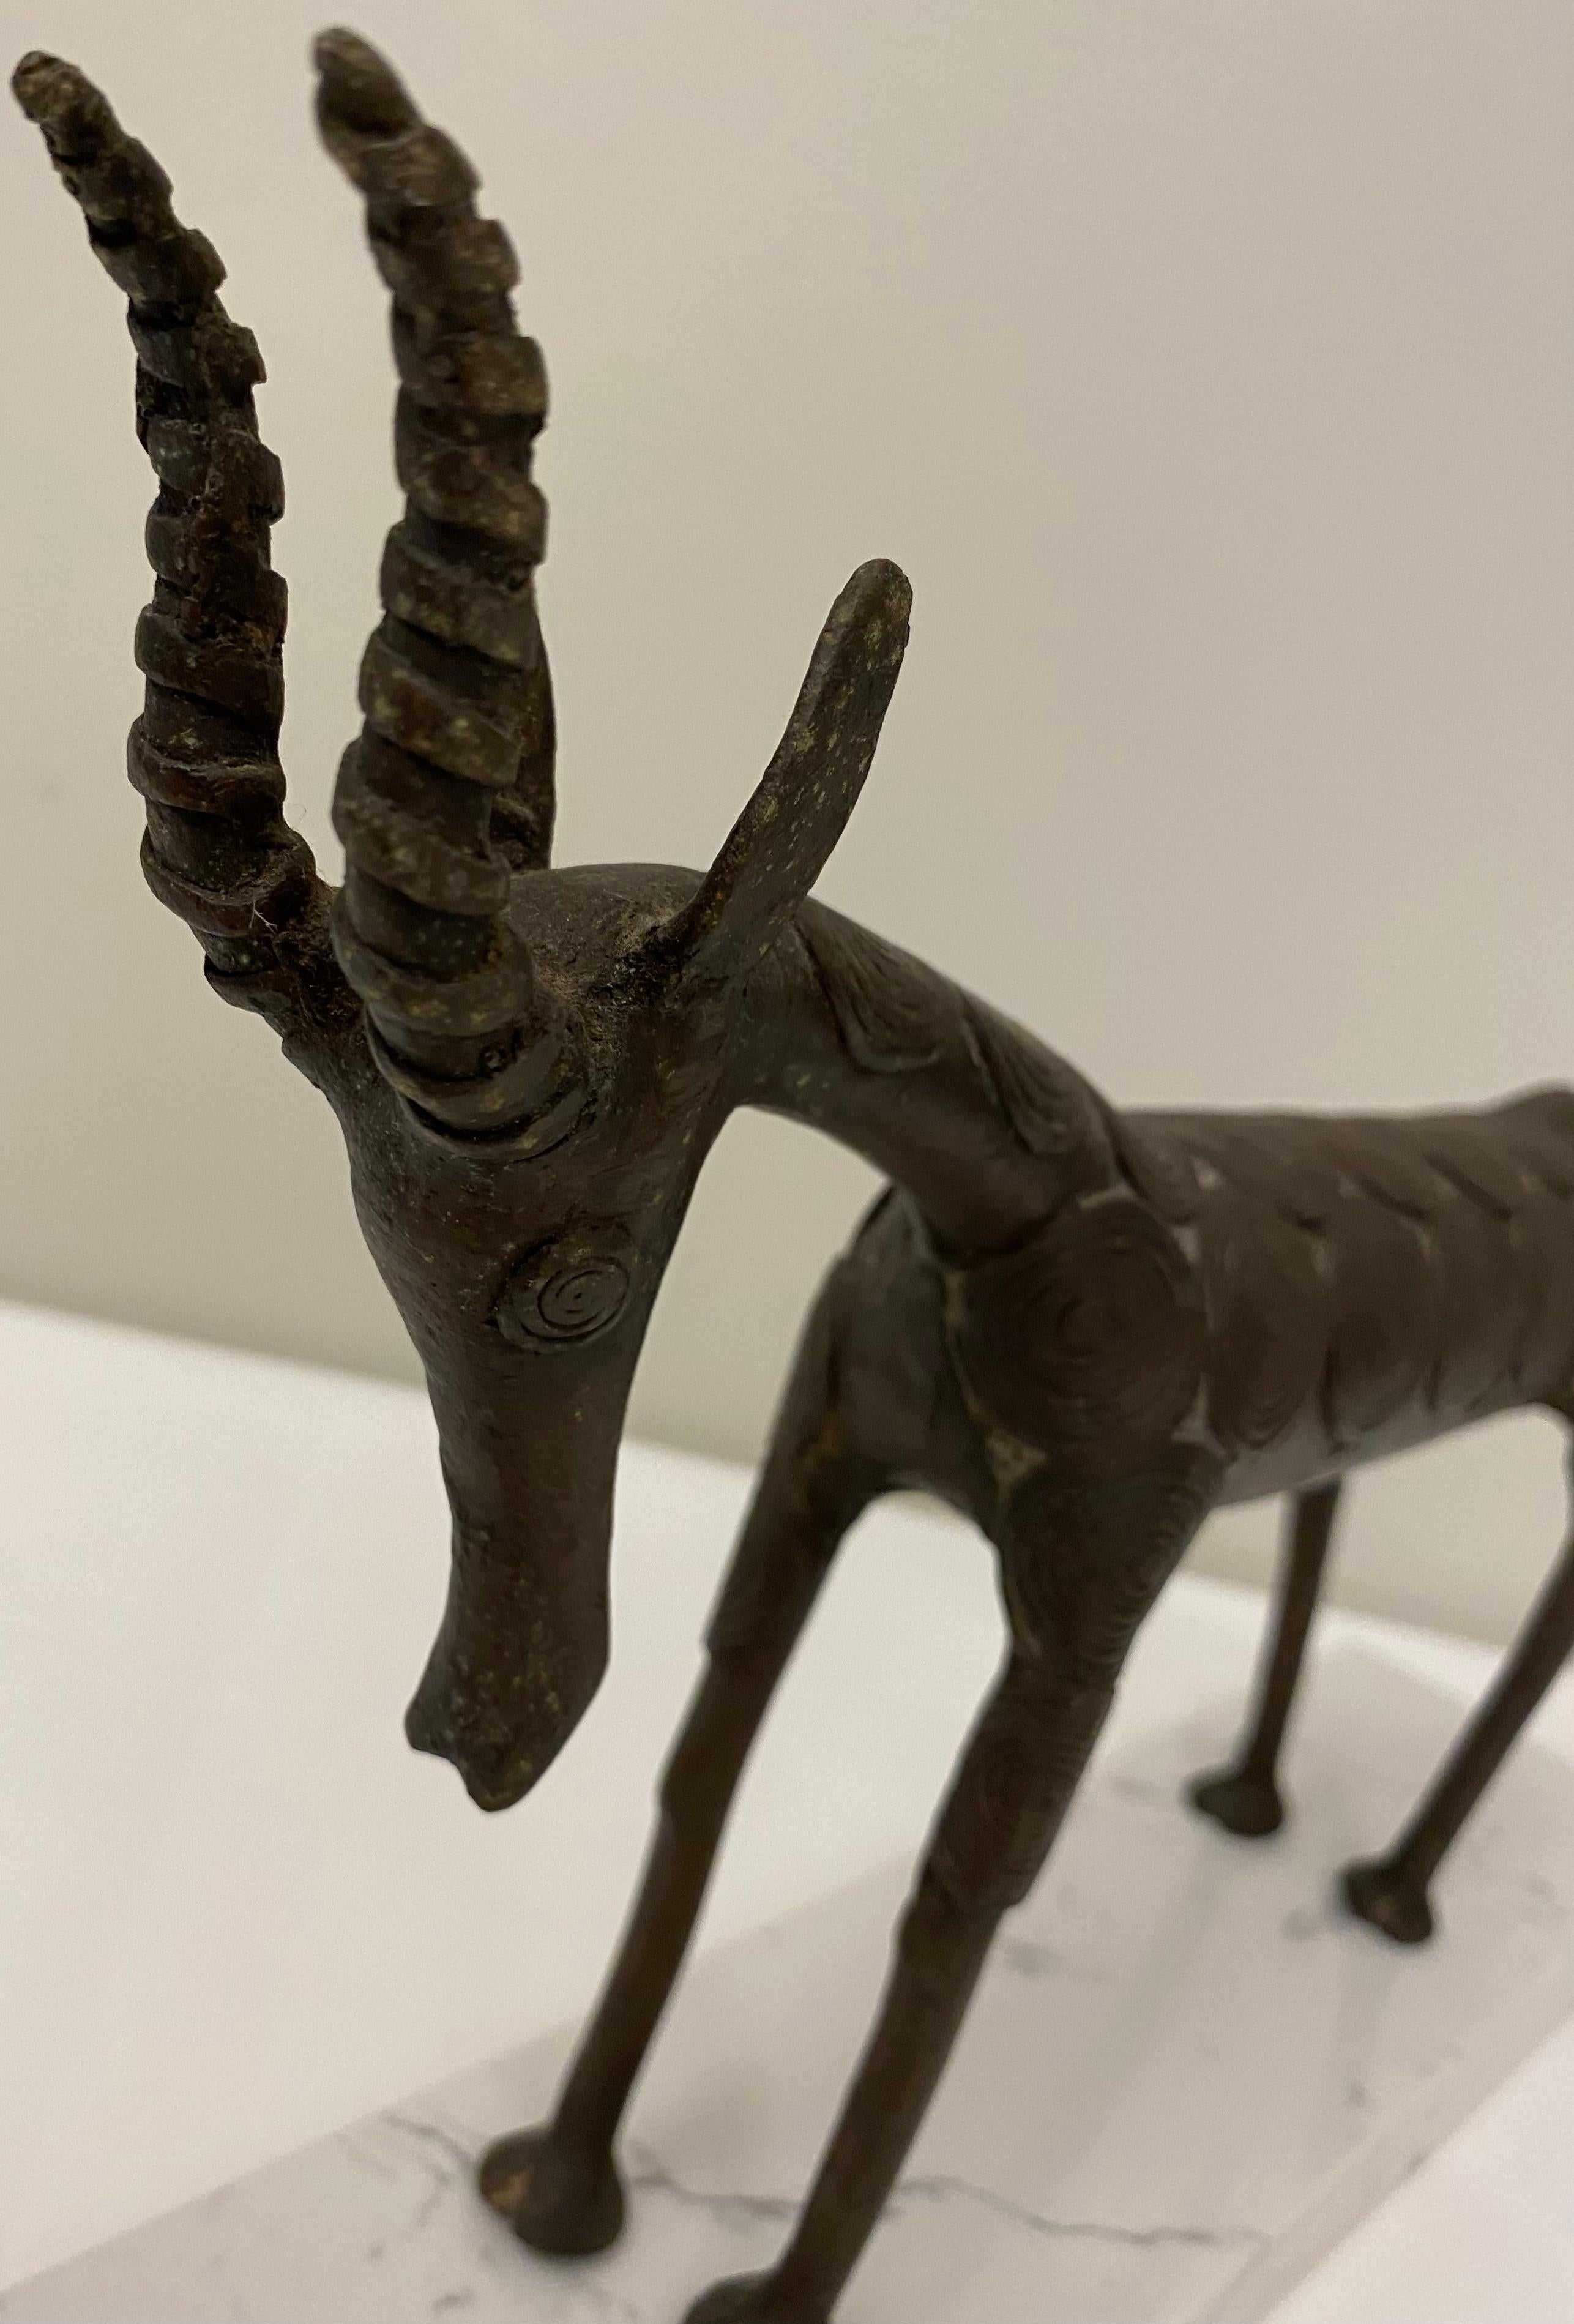 Scultura tribale del Benin, antilope africana lavorata a mano.
Dettagli in bronzo martellato a mano su piccoli pezzi di legno fissati con piccoli chiodi e numerosi intagli. 

Questa forma di oggetto è uno degli esempi più noti dell'arte di Benin,